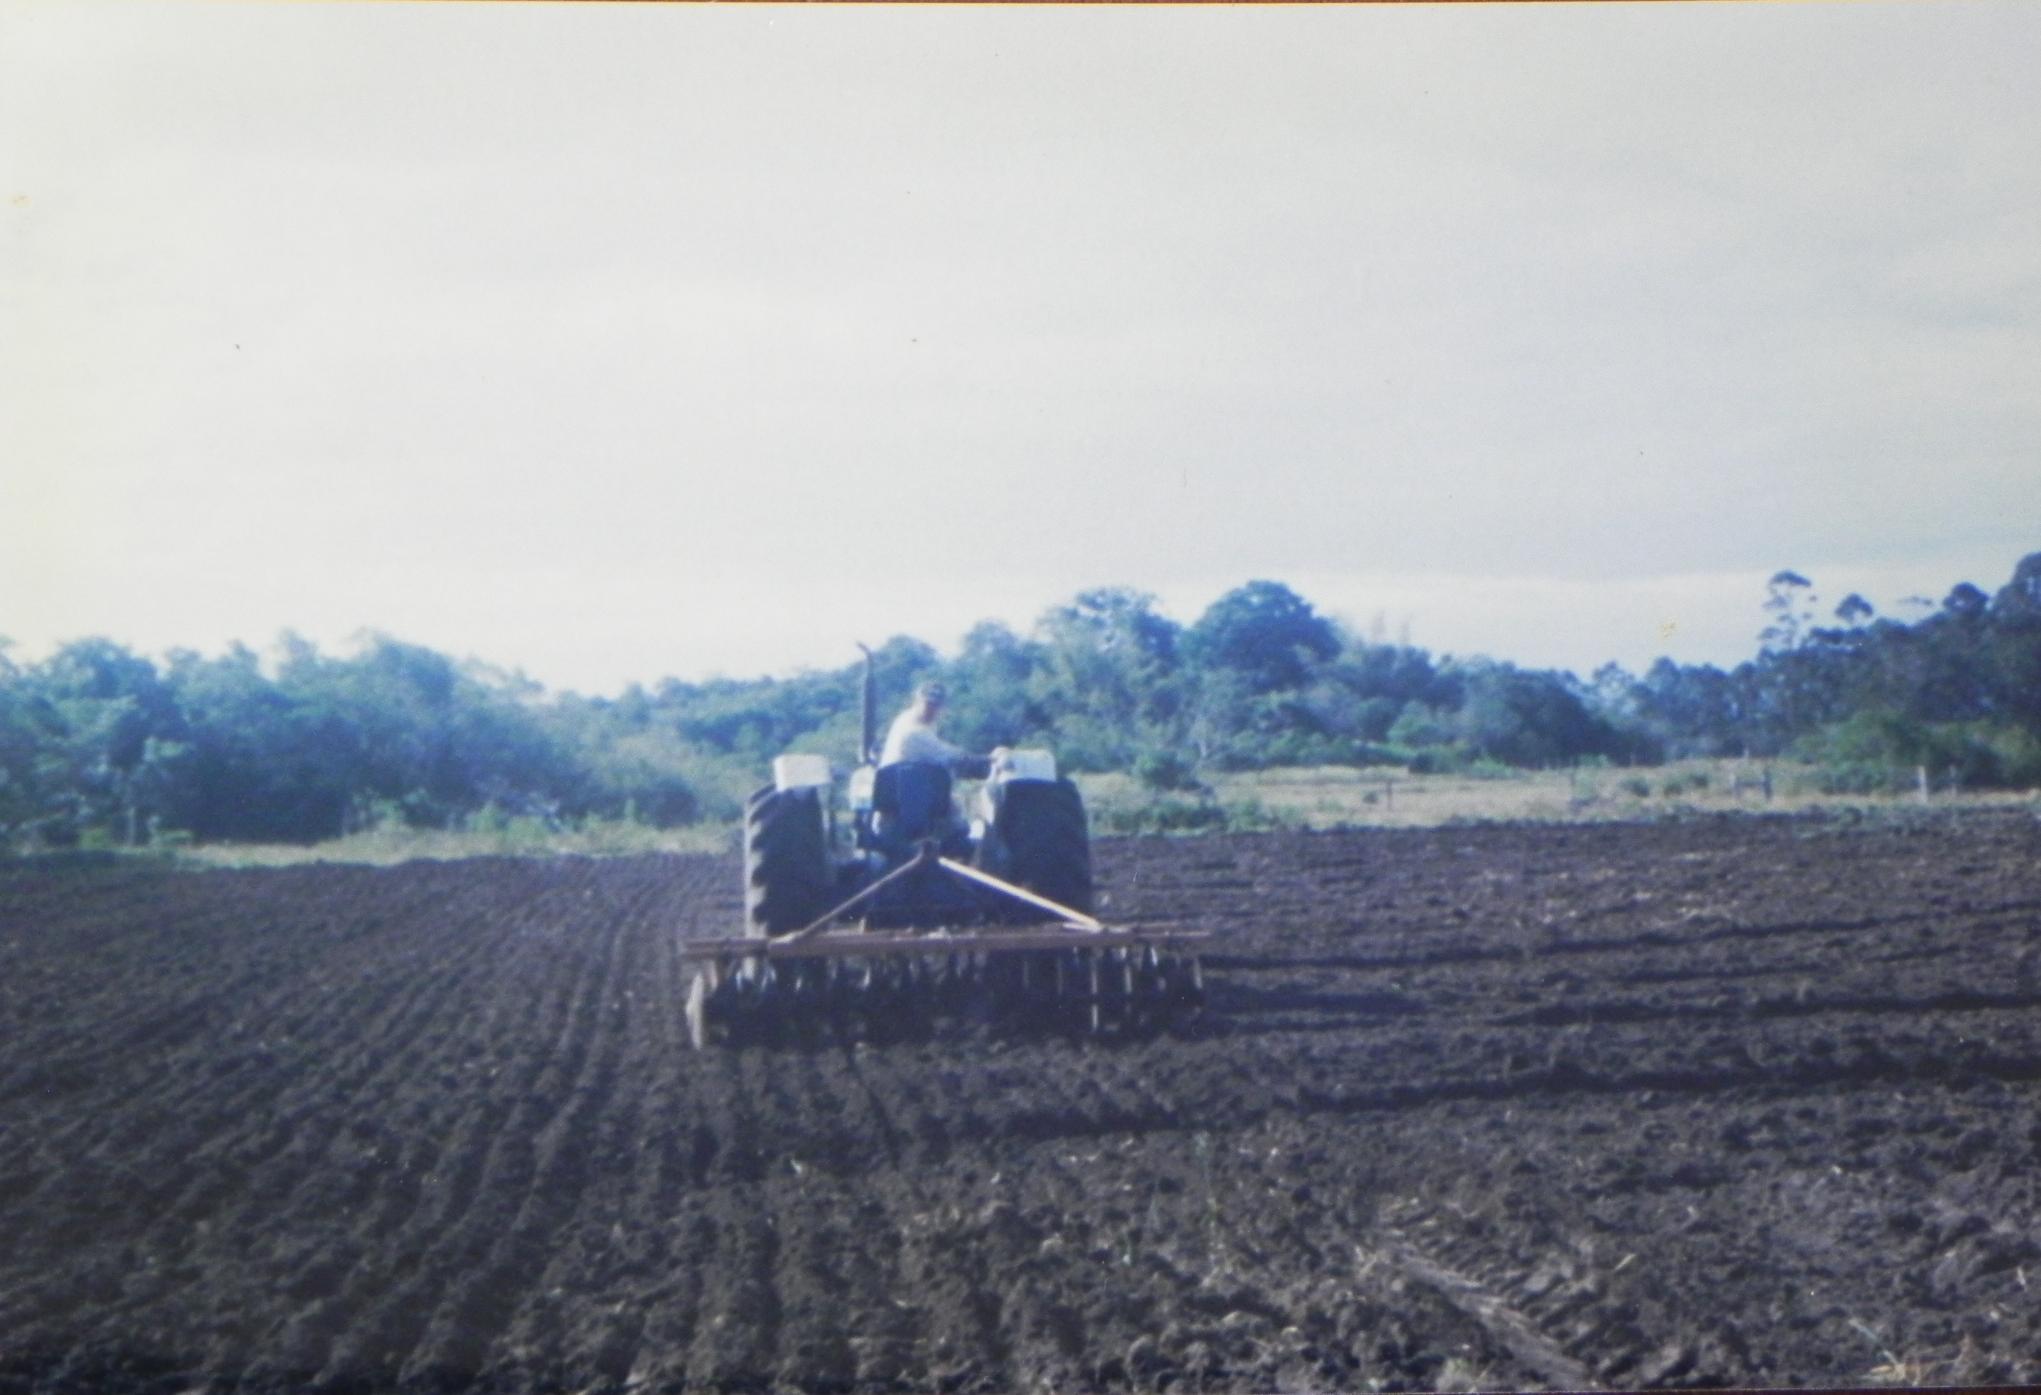 2002 area do lapad Alencar Gradeação preparo plantio milhos dos indigenas.jpg